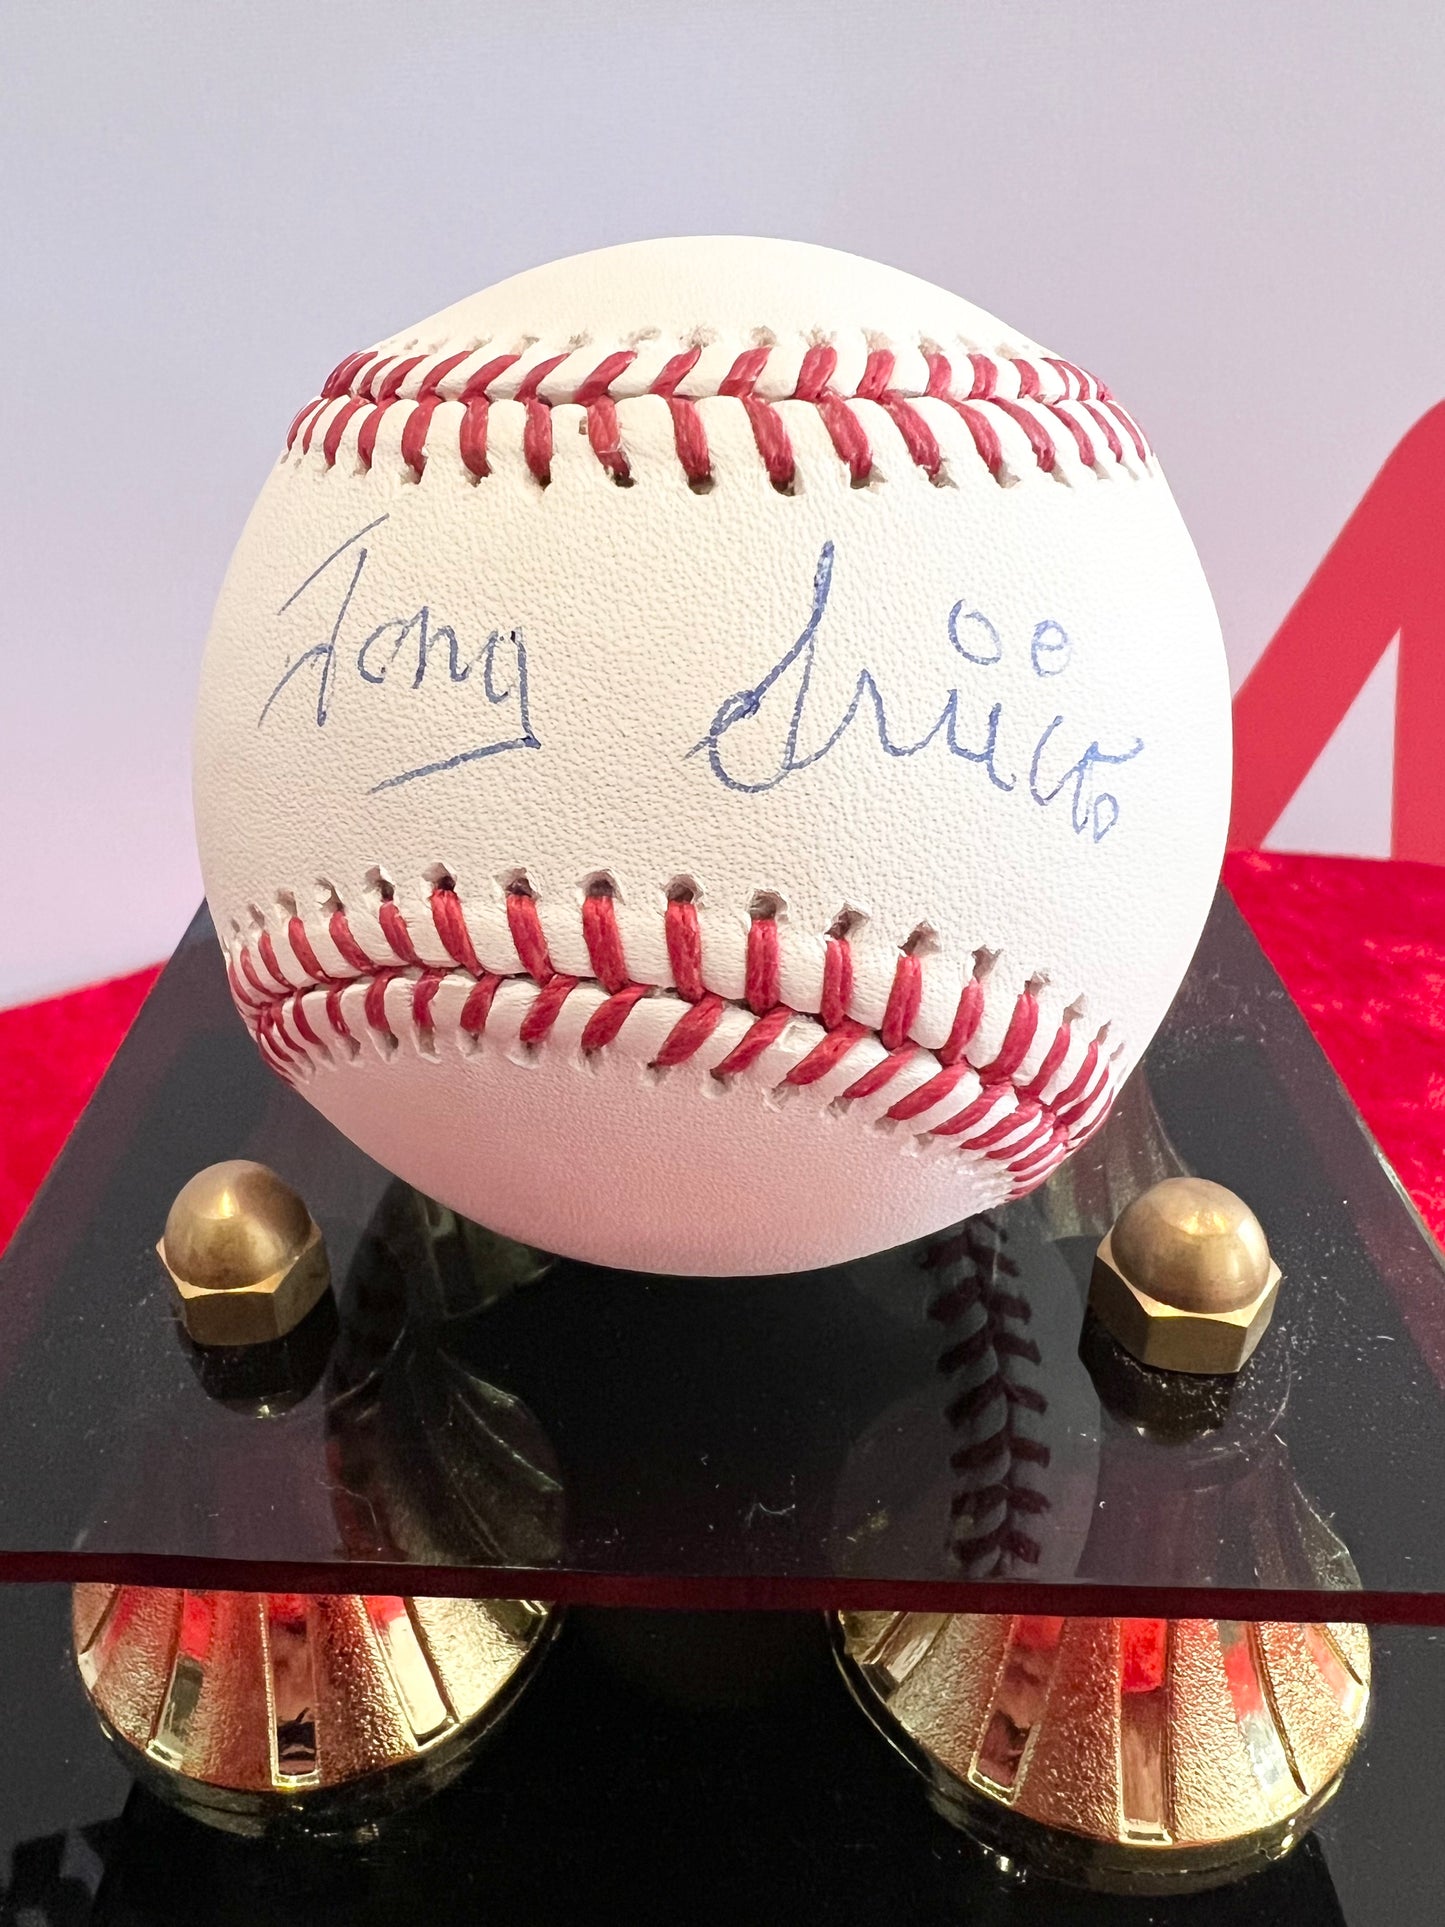 Tony Sirico Signed Autographed Baseball Rare The Sopranos with COA